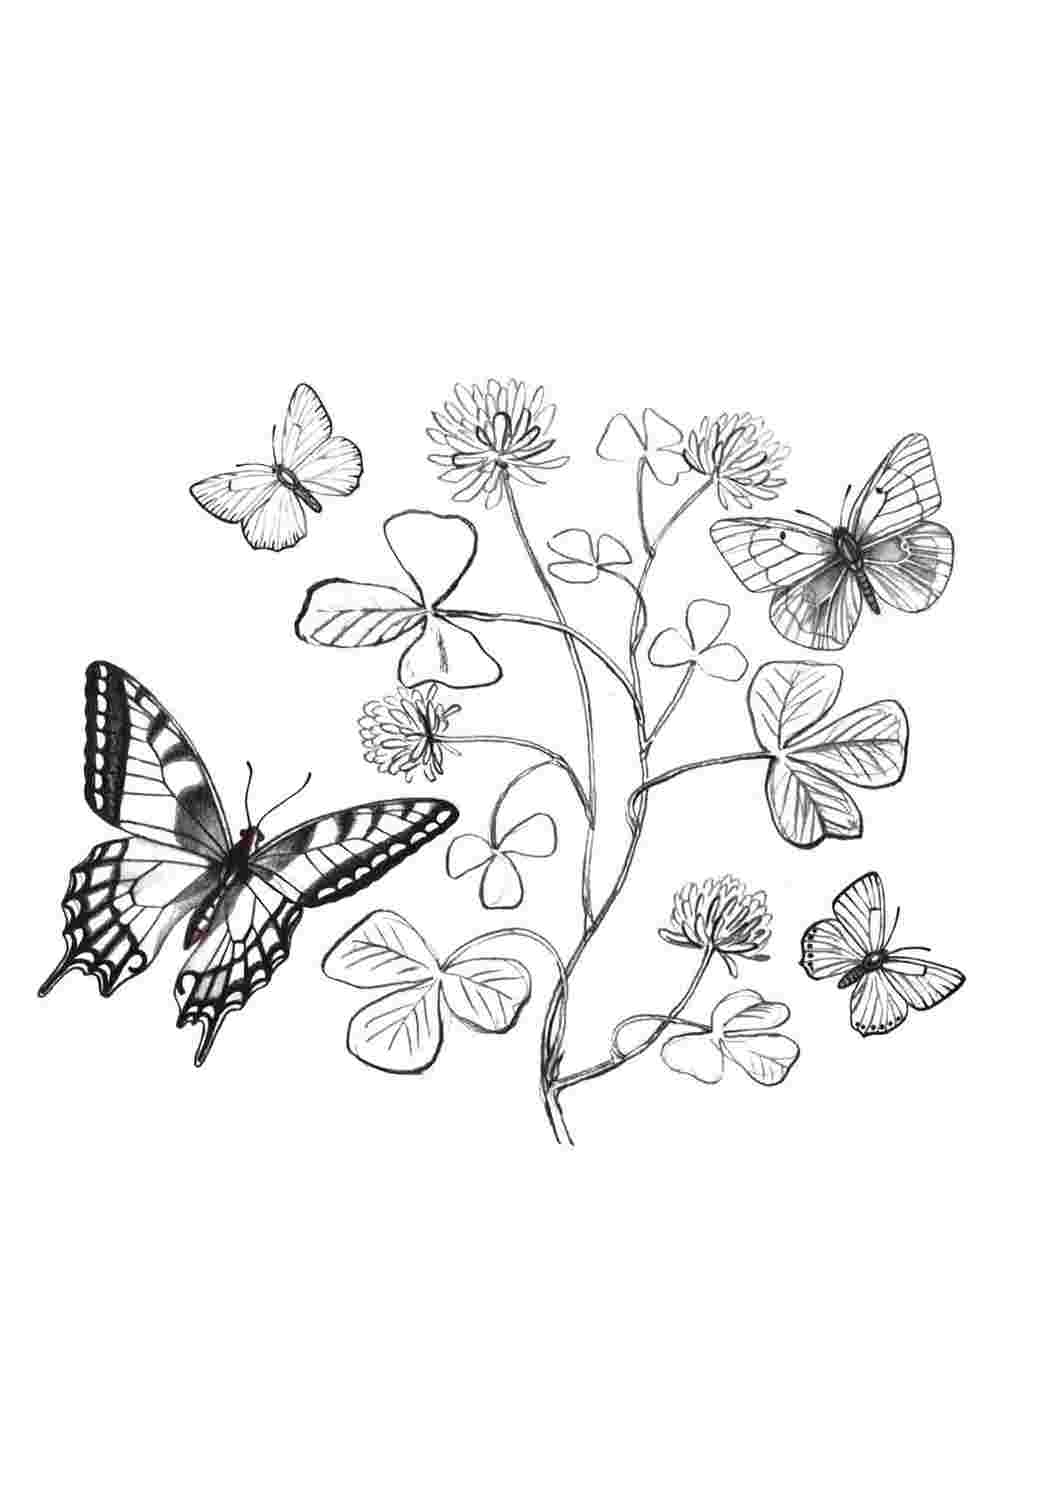 Распечатать раскраски бабочек. Рисунки бабочек, картинки бабочек